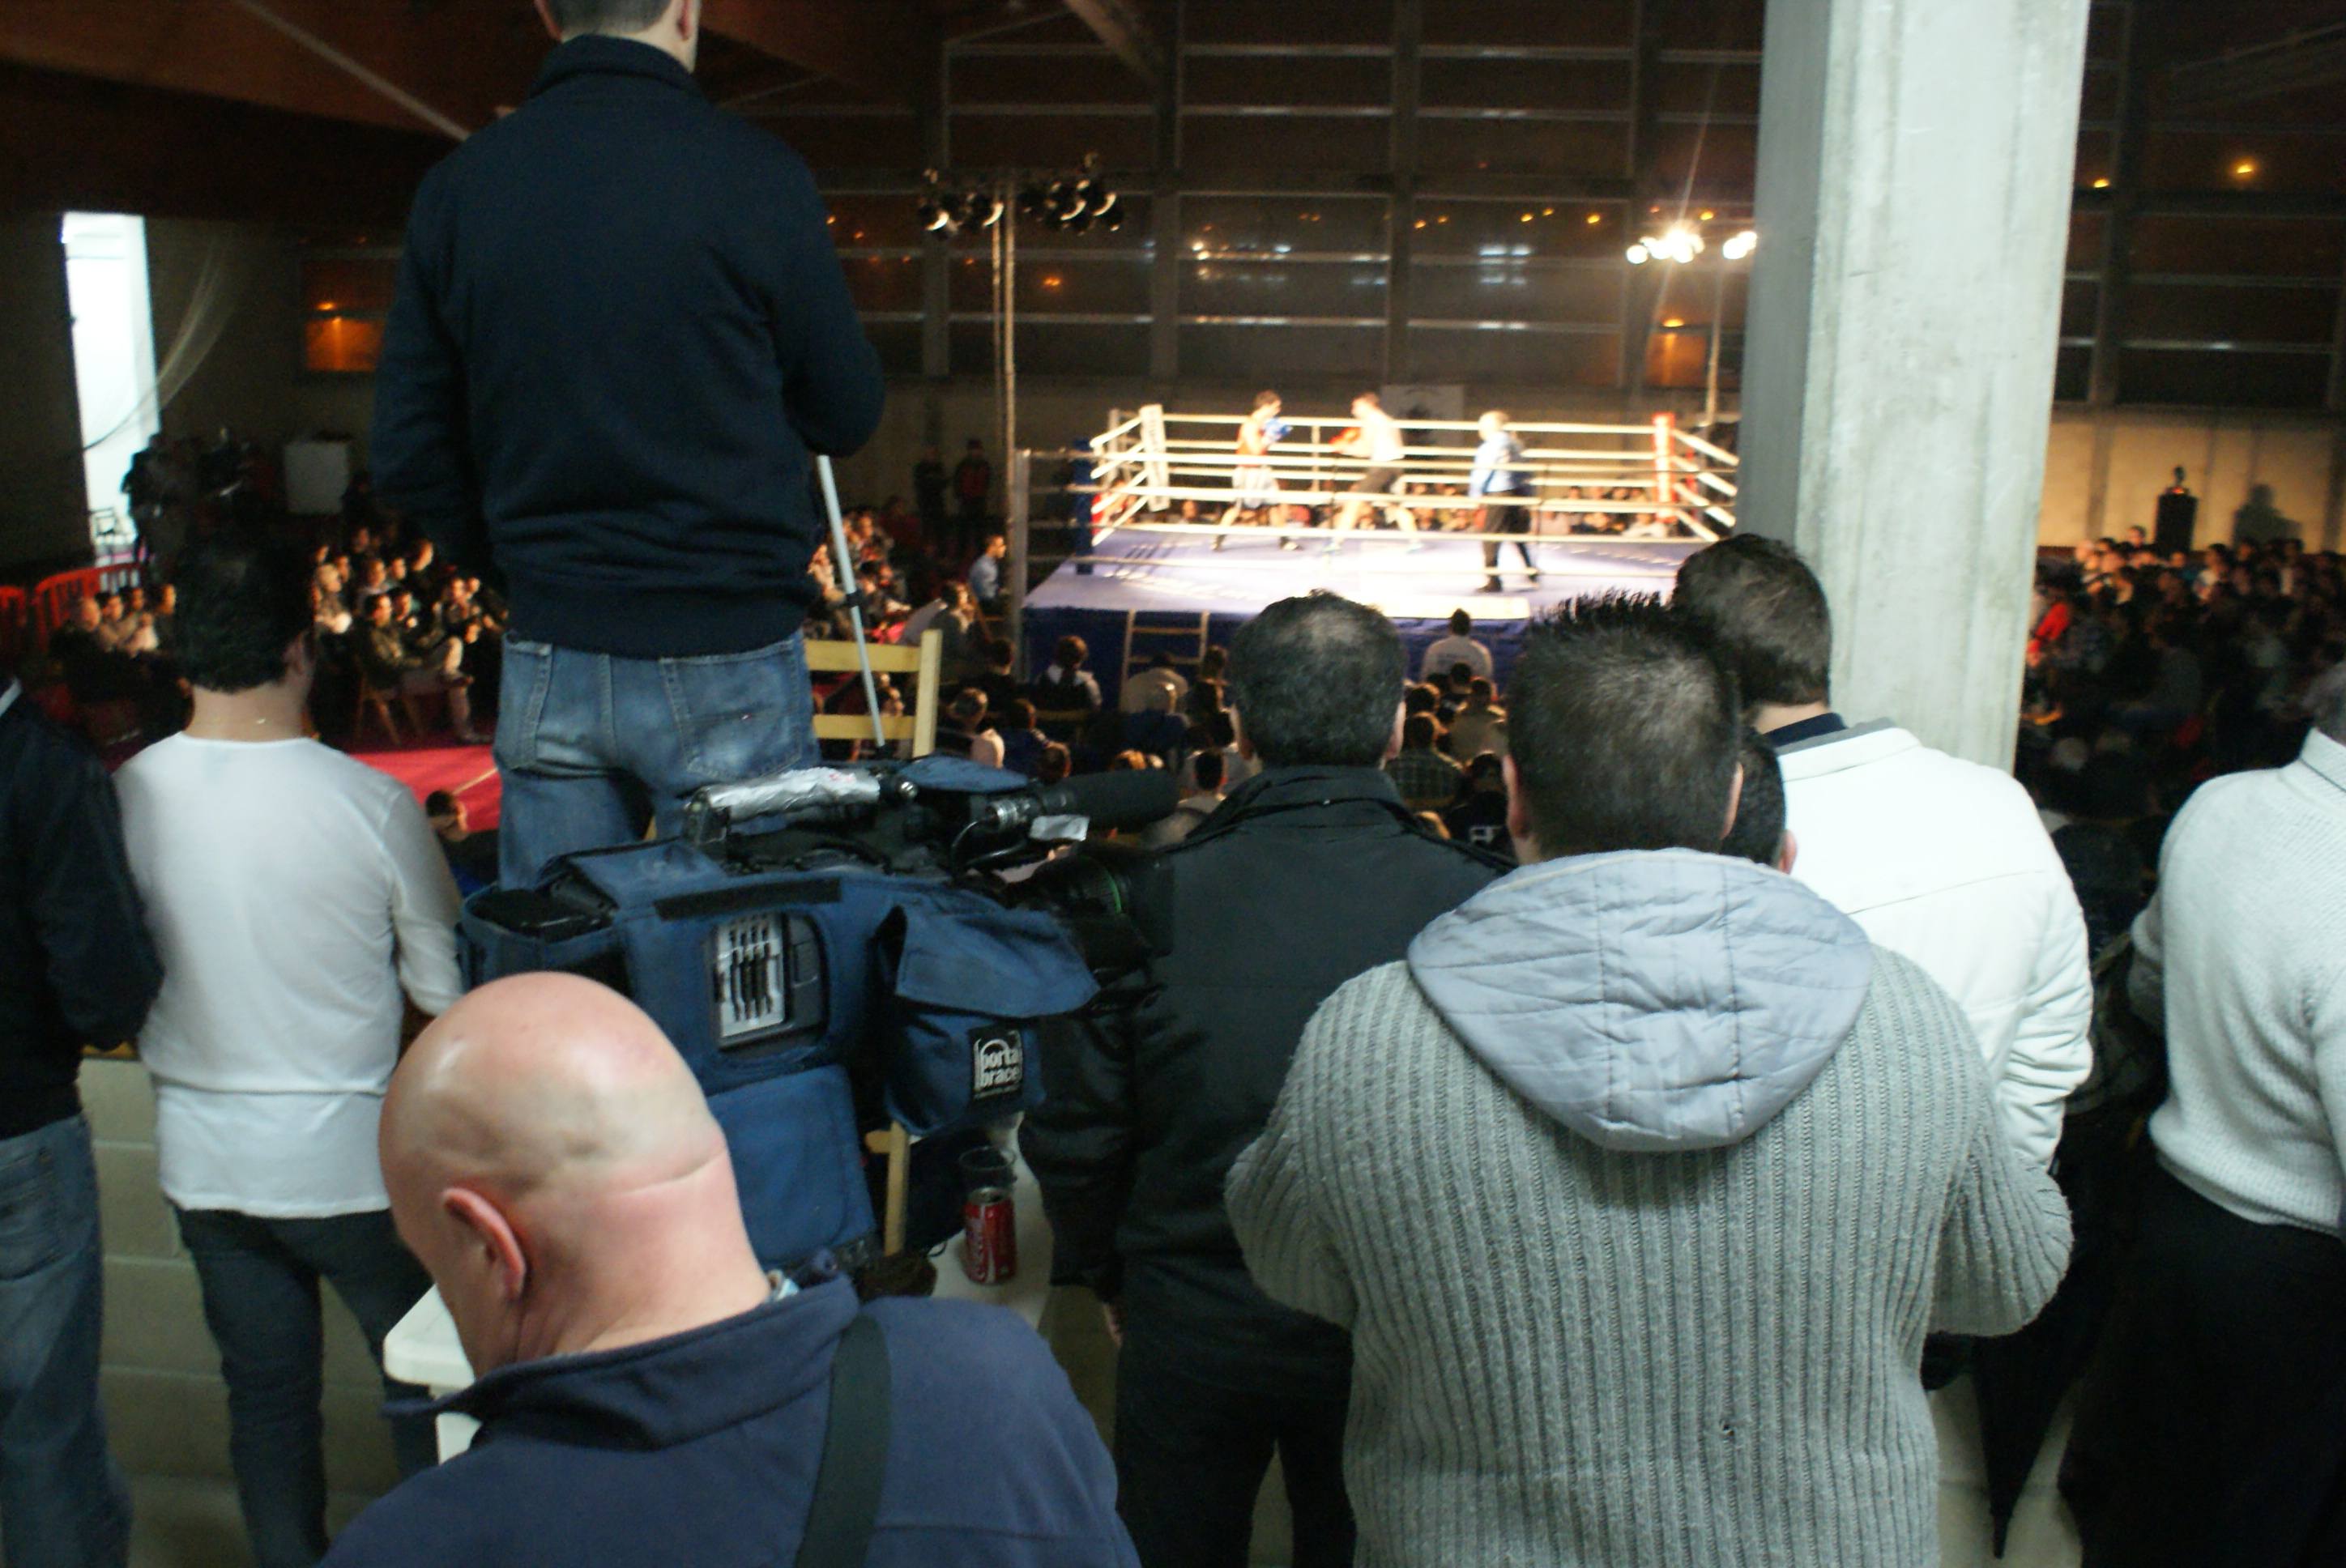 Programas como "Boxeo Izarrak" (ETB) o "Urban KO" (Tele 7) acuden a Zamudio a recoger imágenes de la velada. Muchas gracias a los medios que mantienen vivo el fuego del boxeo. Aunque, entre tanto público, no está fácil trabajar.